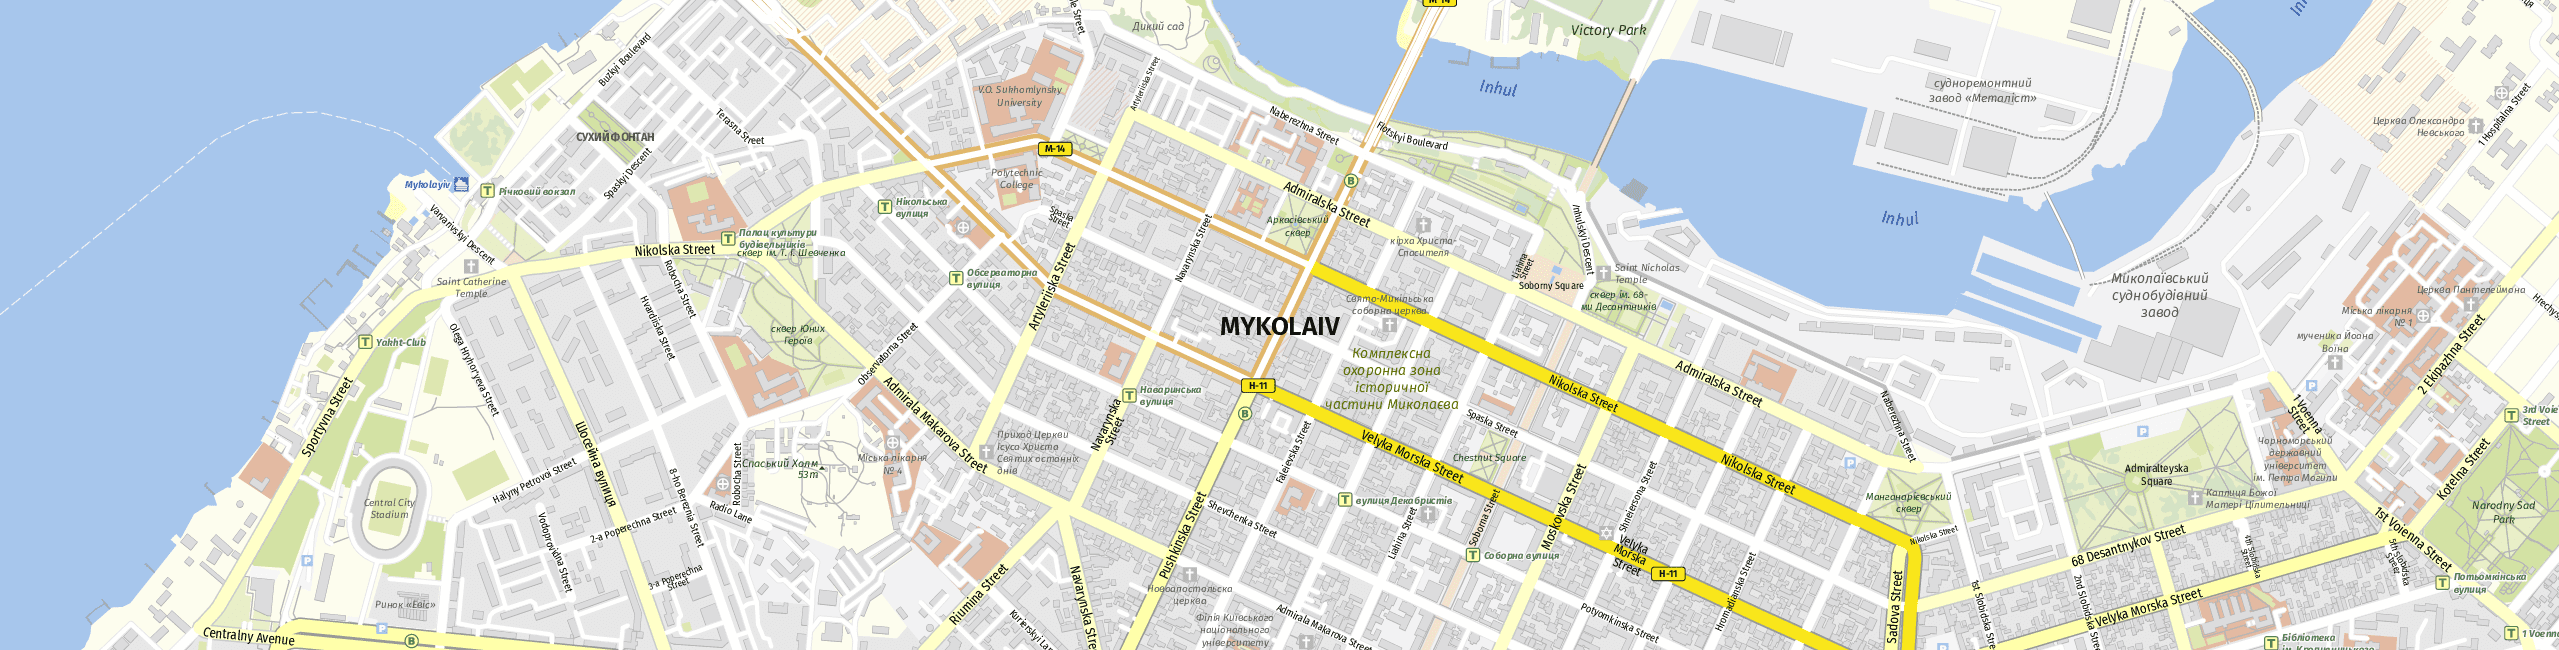 Stadtplan Mykolajiw zum Downloaden.